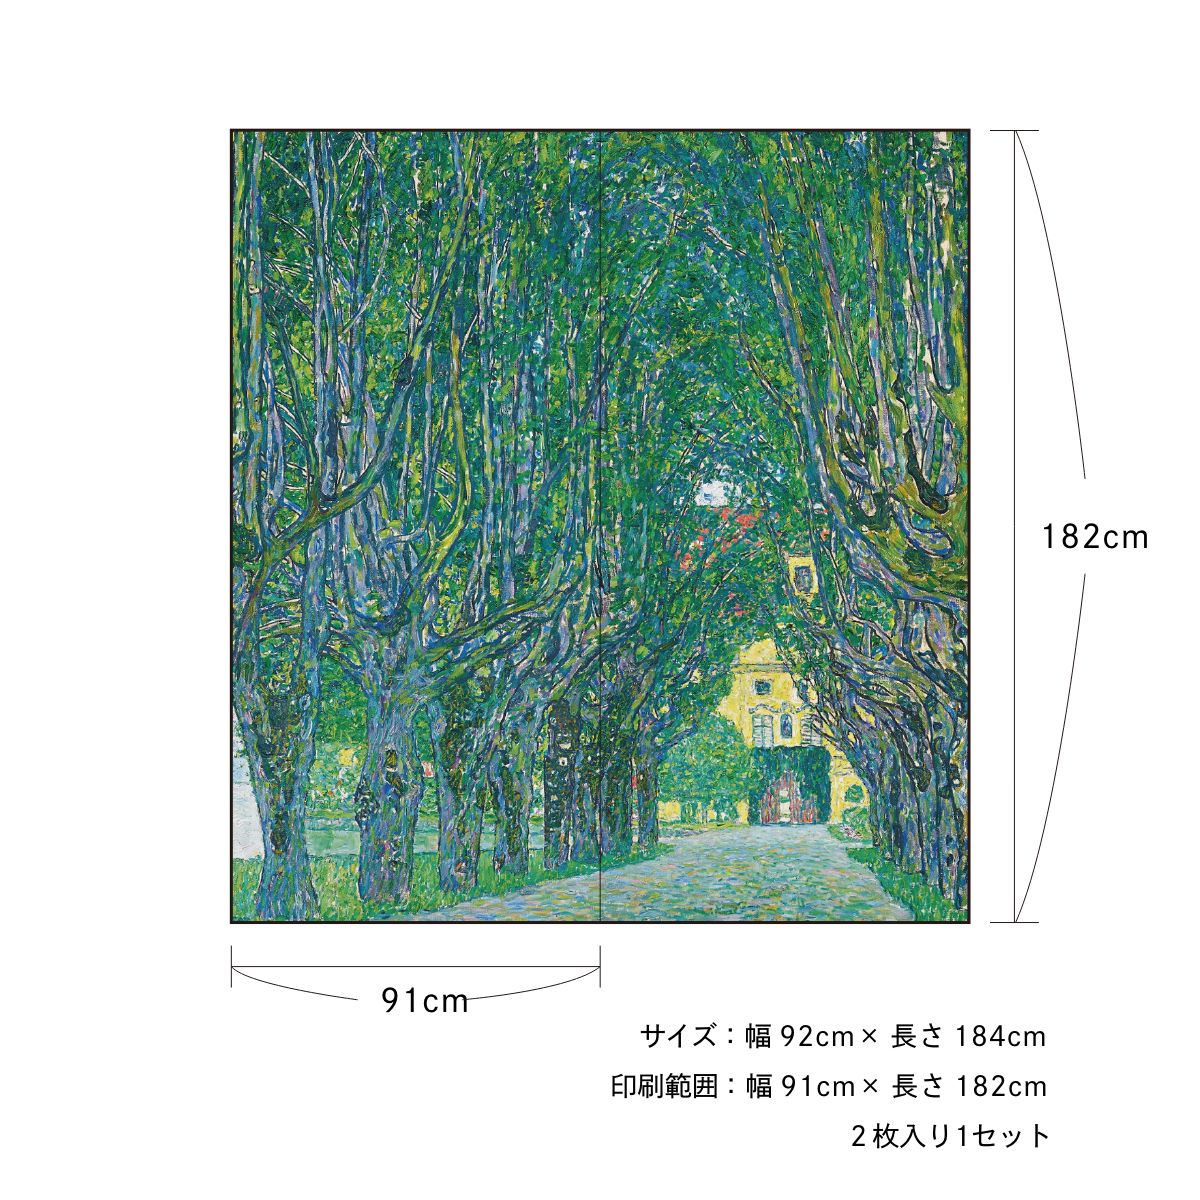 世界の名画 ふすま紙 グスタフ・クリムト カンマー城庭園の並木道 2枚1組 水で貼るタイプ 幅91cm×長さ182cm 襖紙 アサヒペン WWA-005F